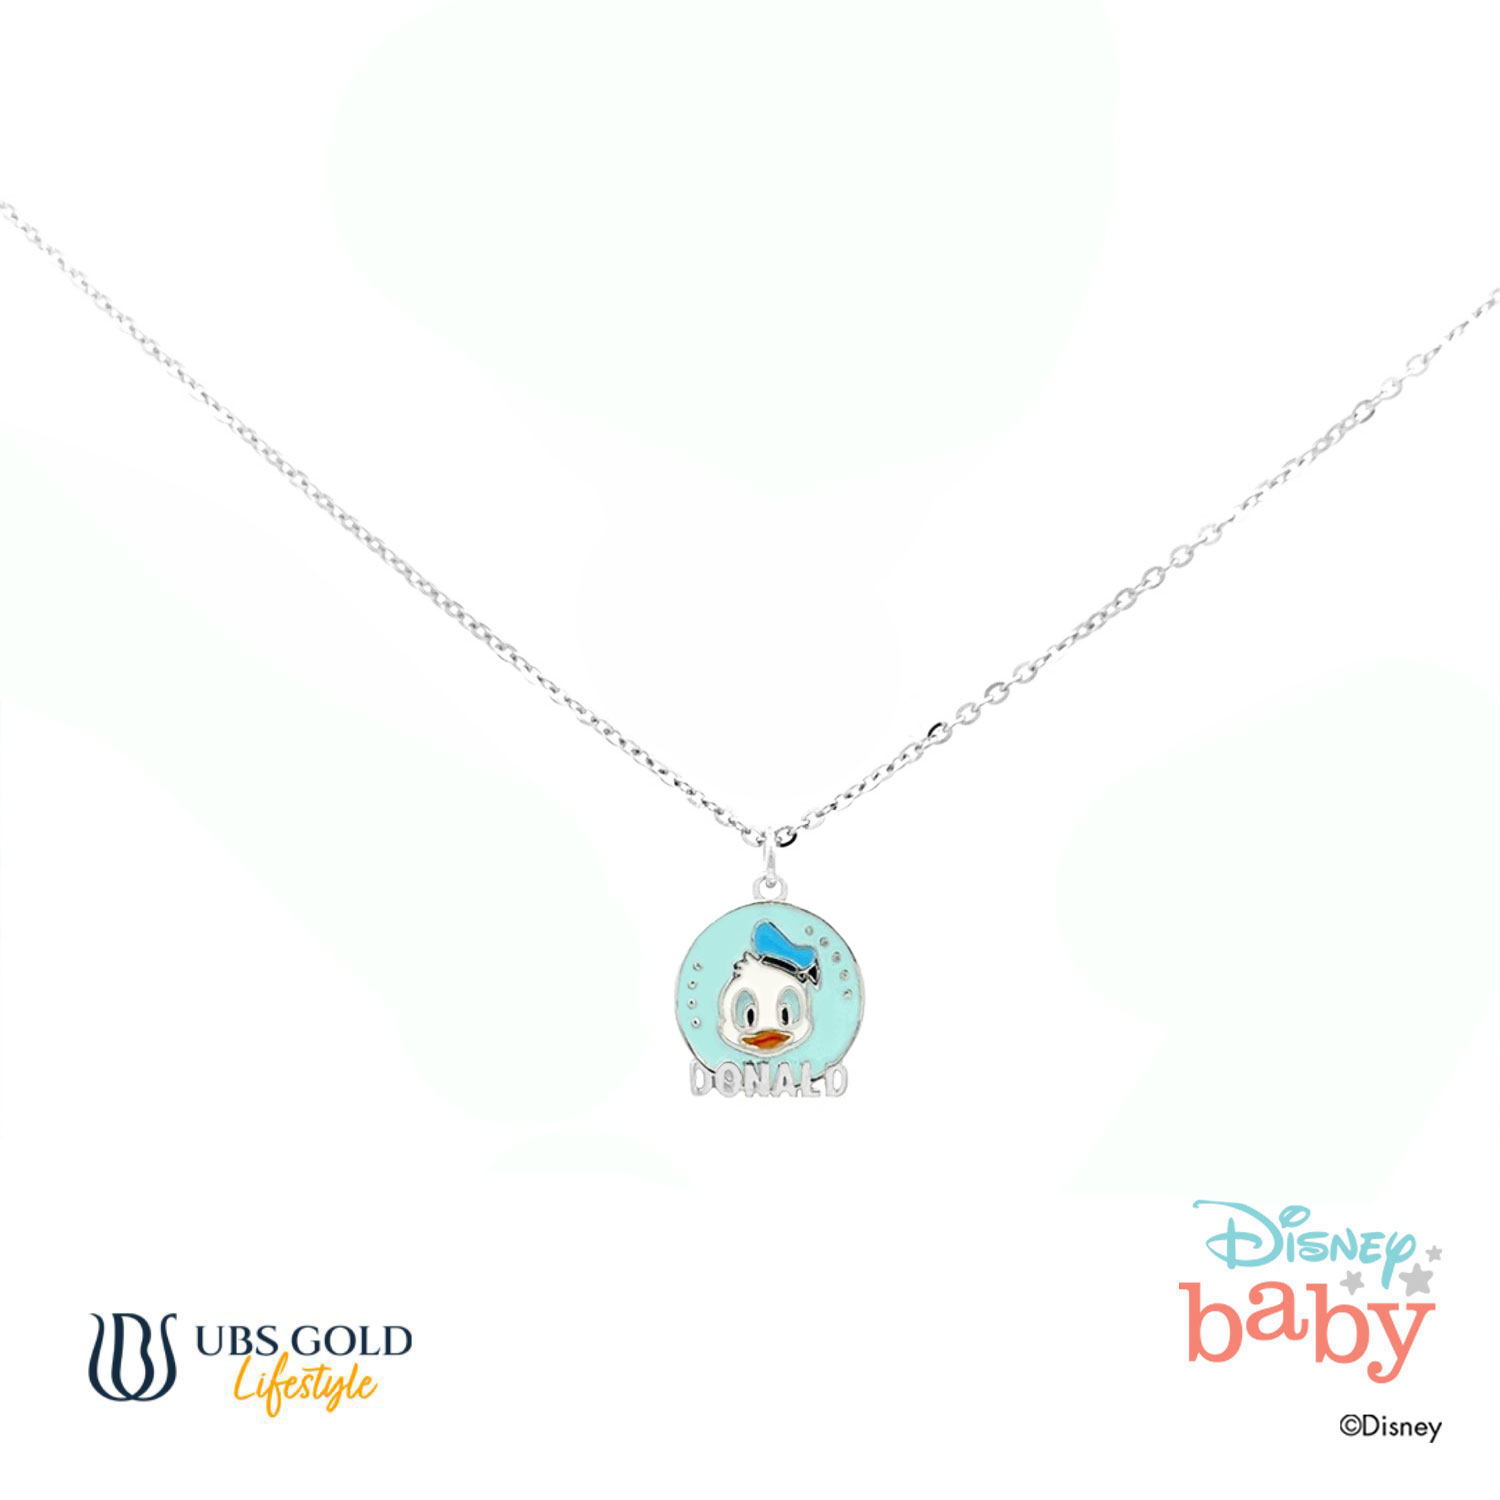 UBS Gold Kalung Emas Anak Disney Donald Duck - Kky0088 - 17K